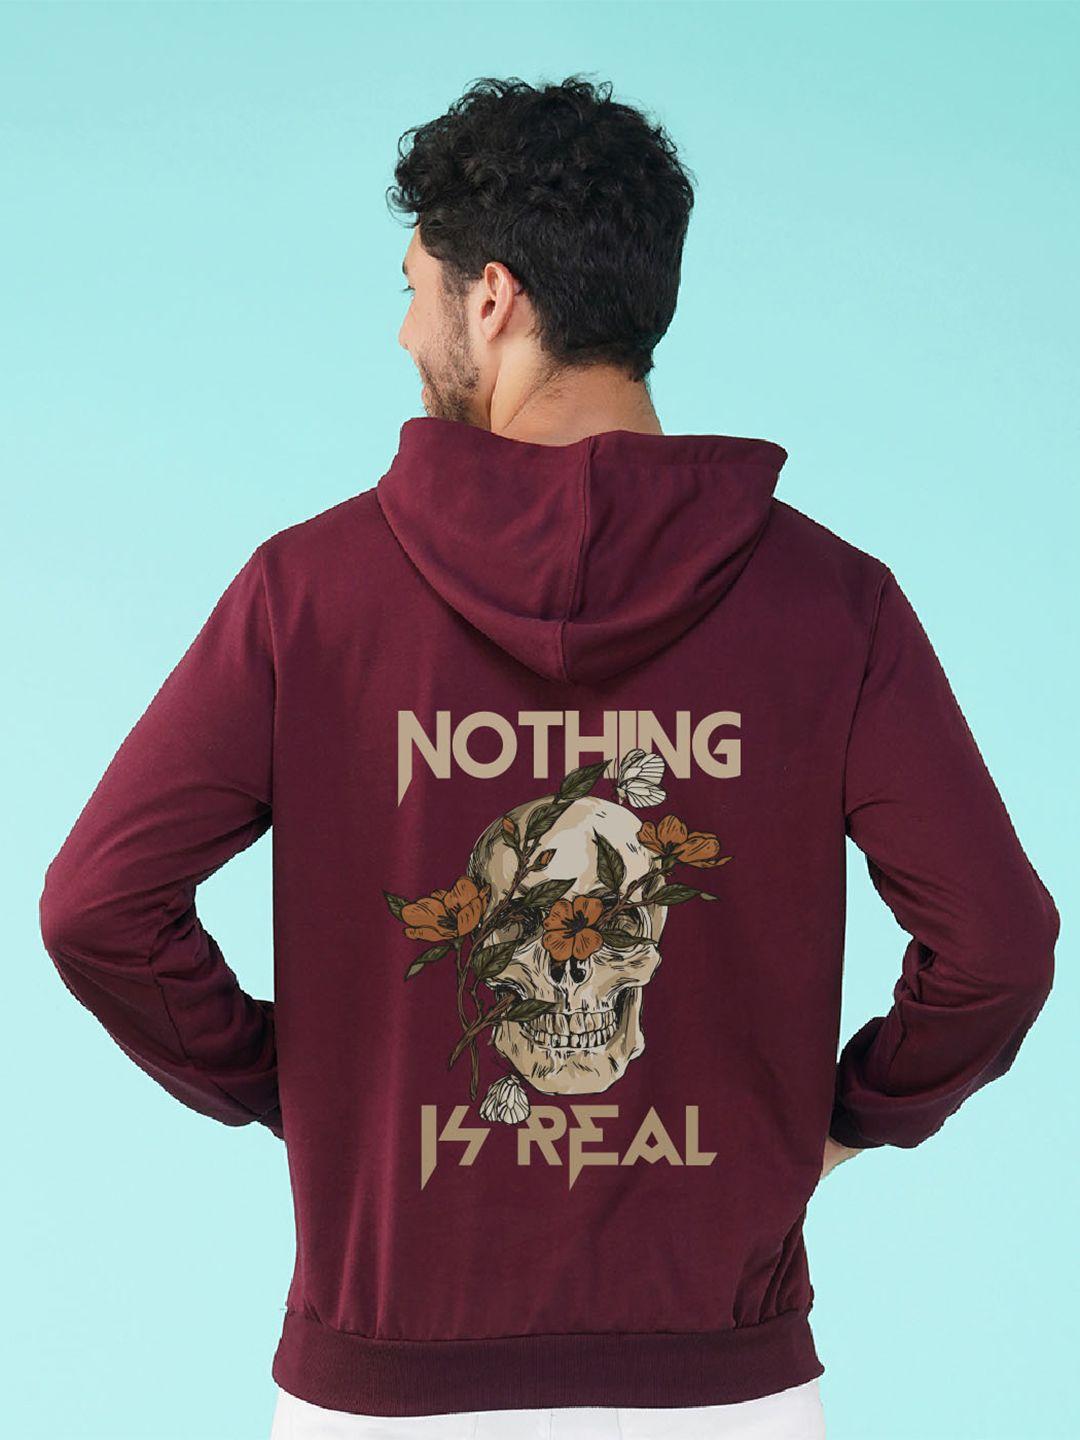 nusyl graphic printed hooded sweatshirt